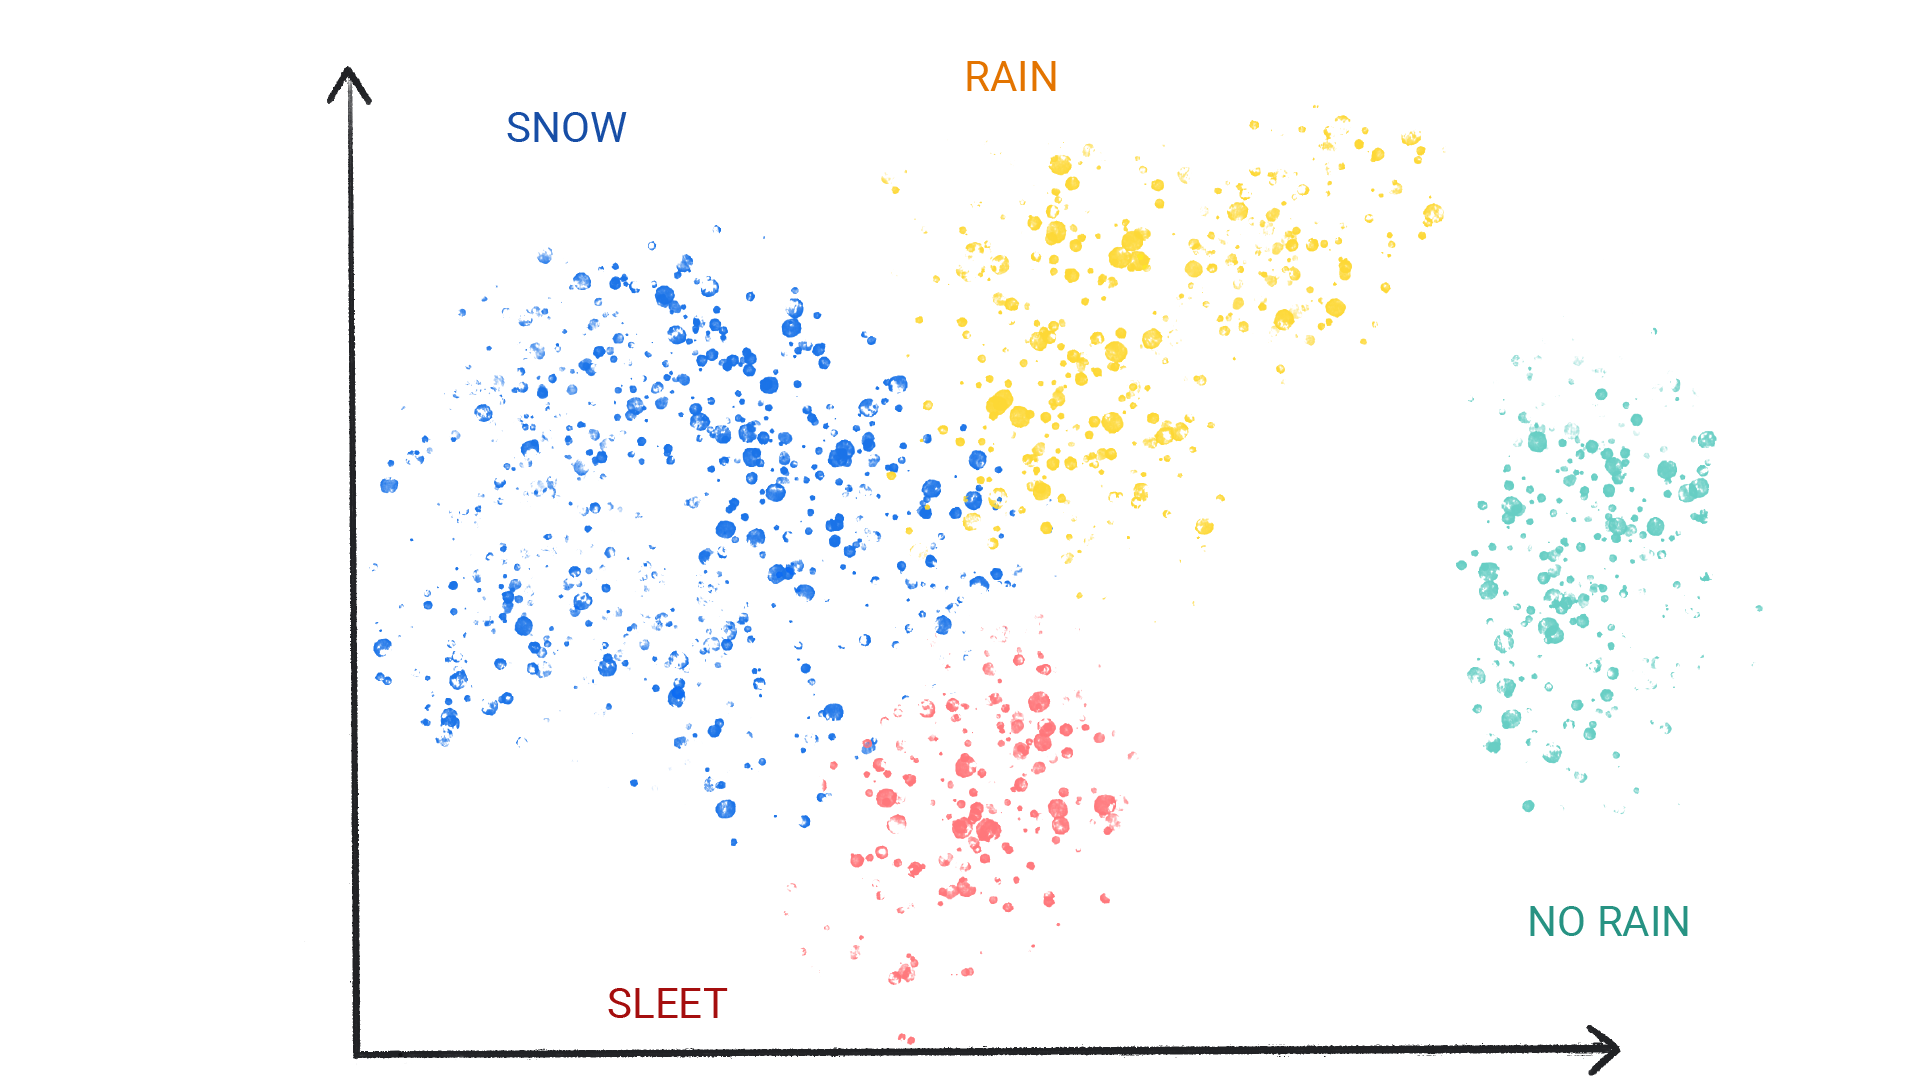 Изображение, показывающее цветные точки в кластерах, помеченных как снег, дождь, град и отсутствие дождя.